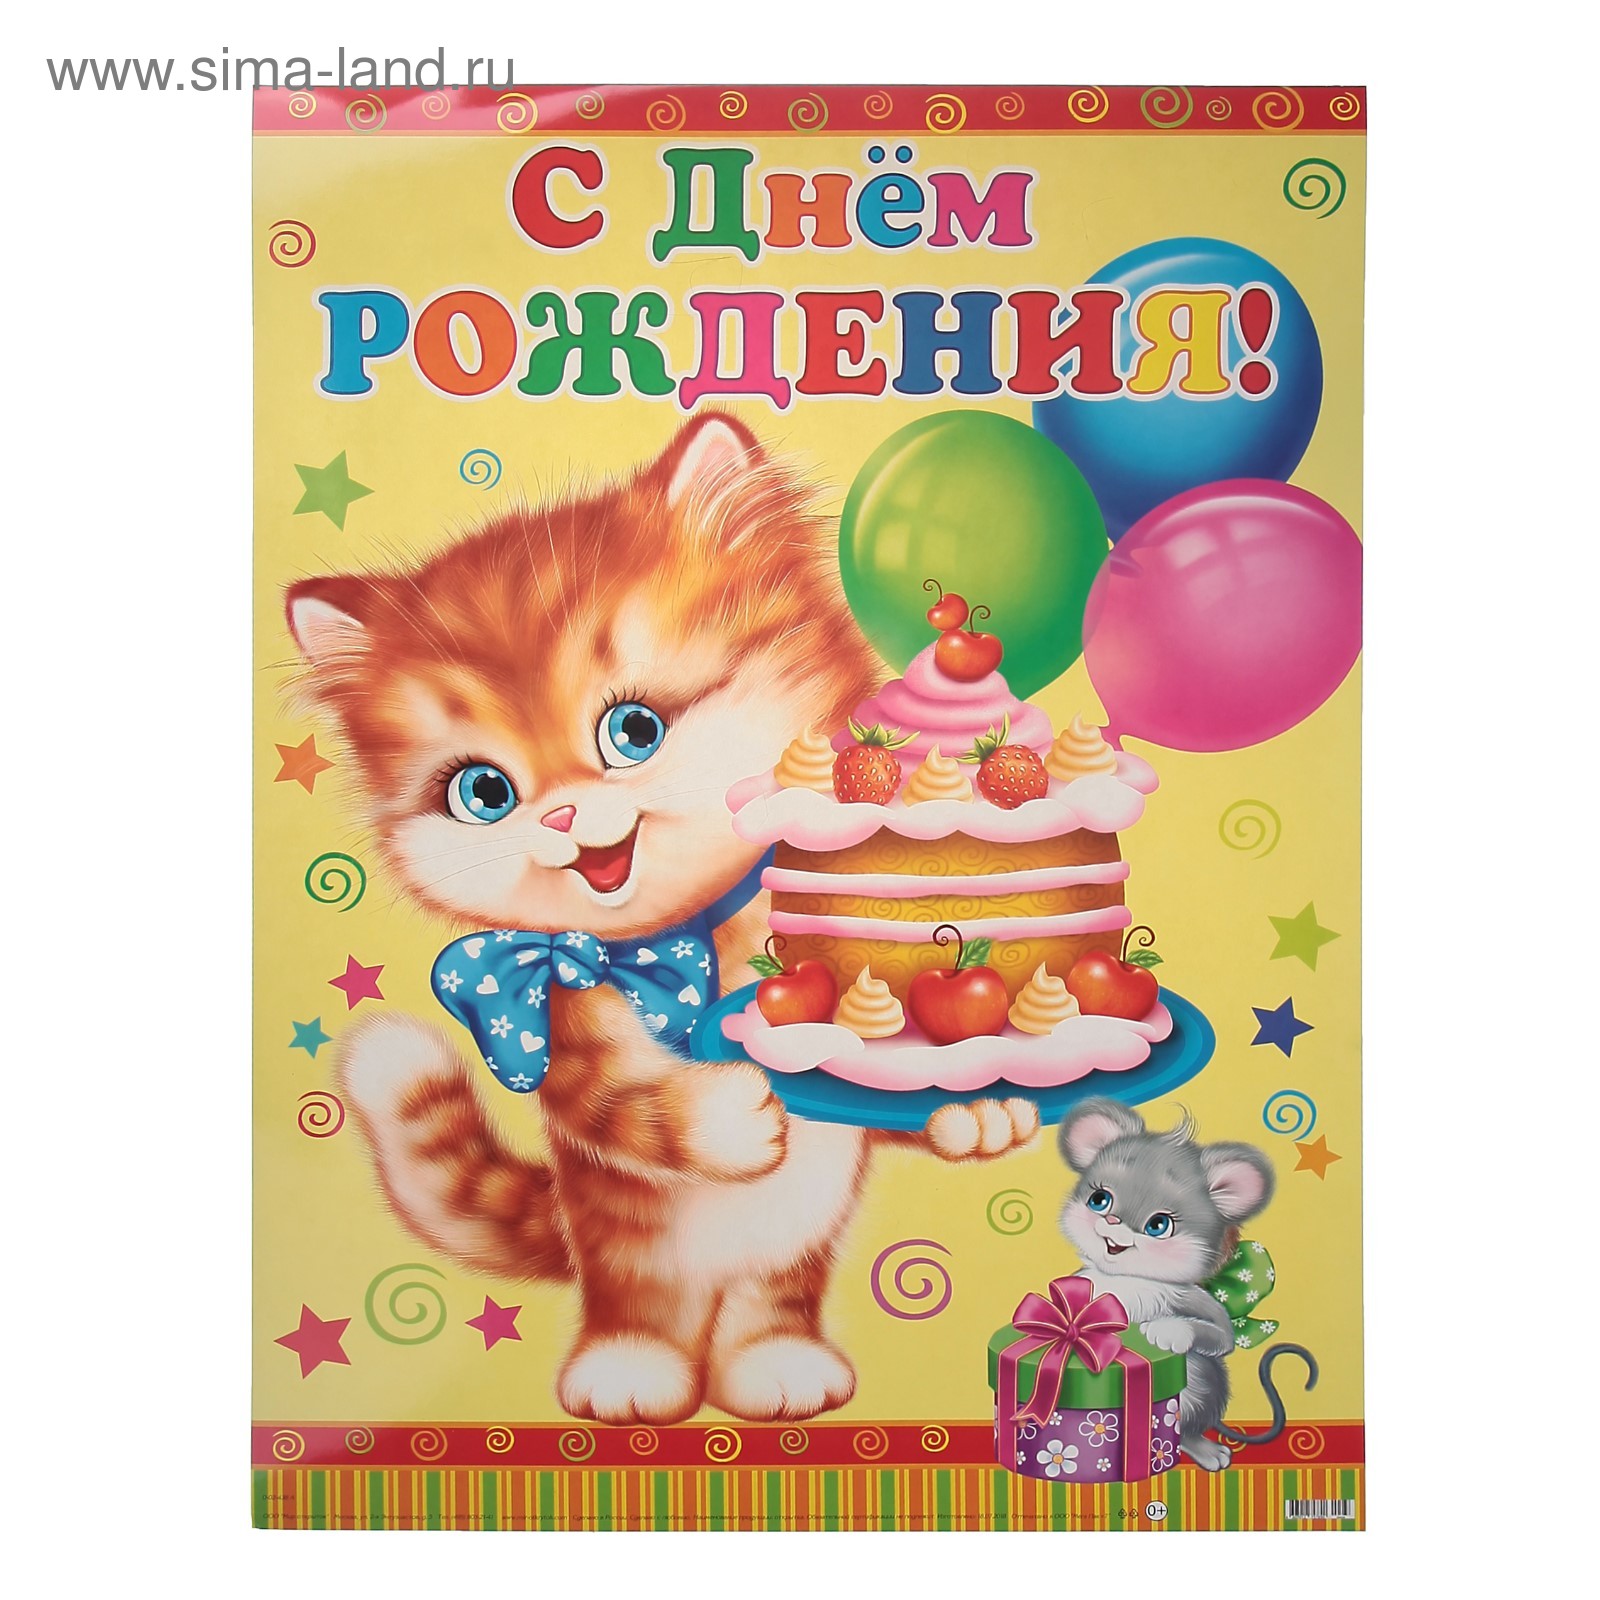 Открытка с днем рождения с котятами. С днём рождения с котиками. Открытка с днём рождения с котятами. Котенок поздравляет с днем рождения. С днем рождения. Плакат.